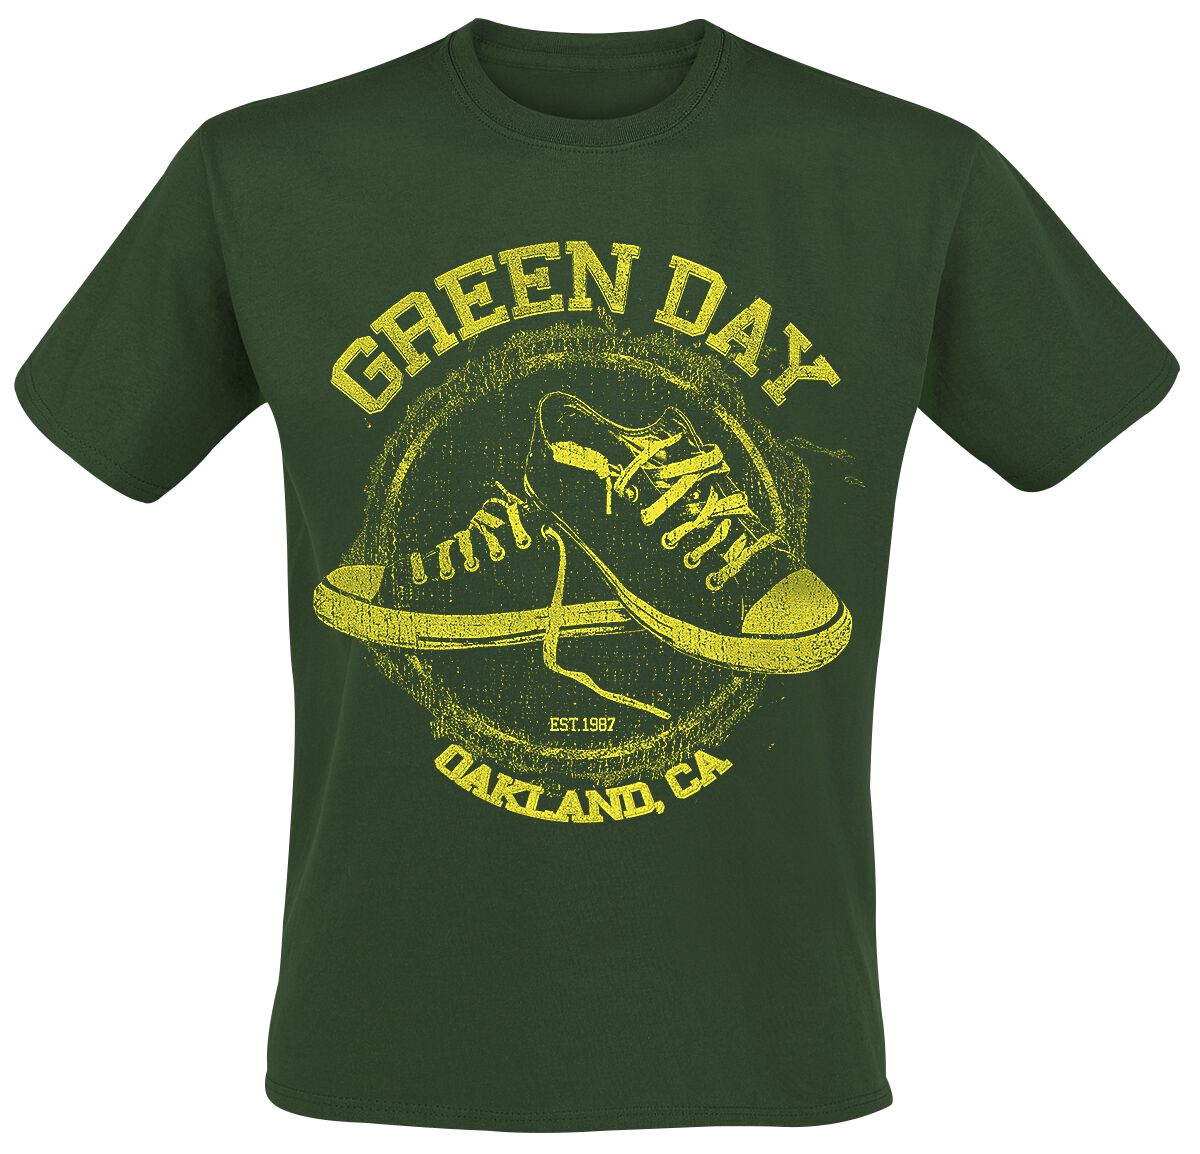 Green Day T-Shirt - All Star - S bis XXL - für Männer - Größe S - grün  - Lizenziertes Merchandise!